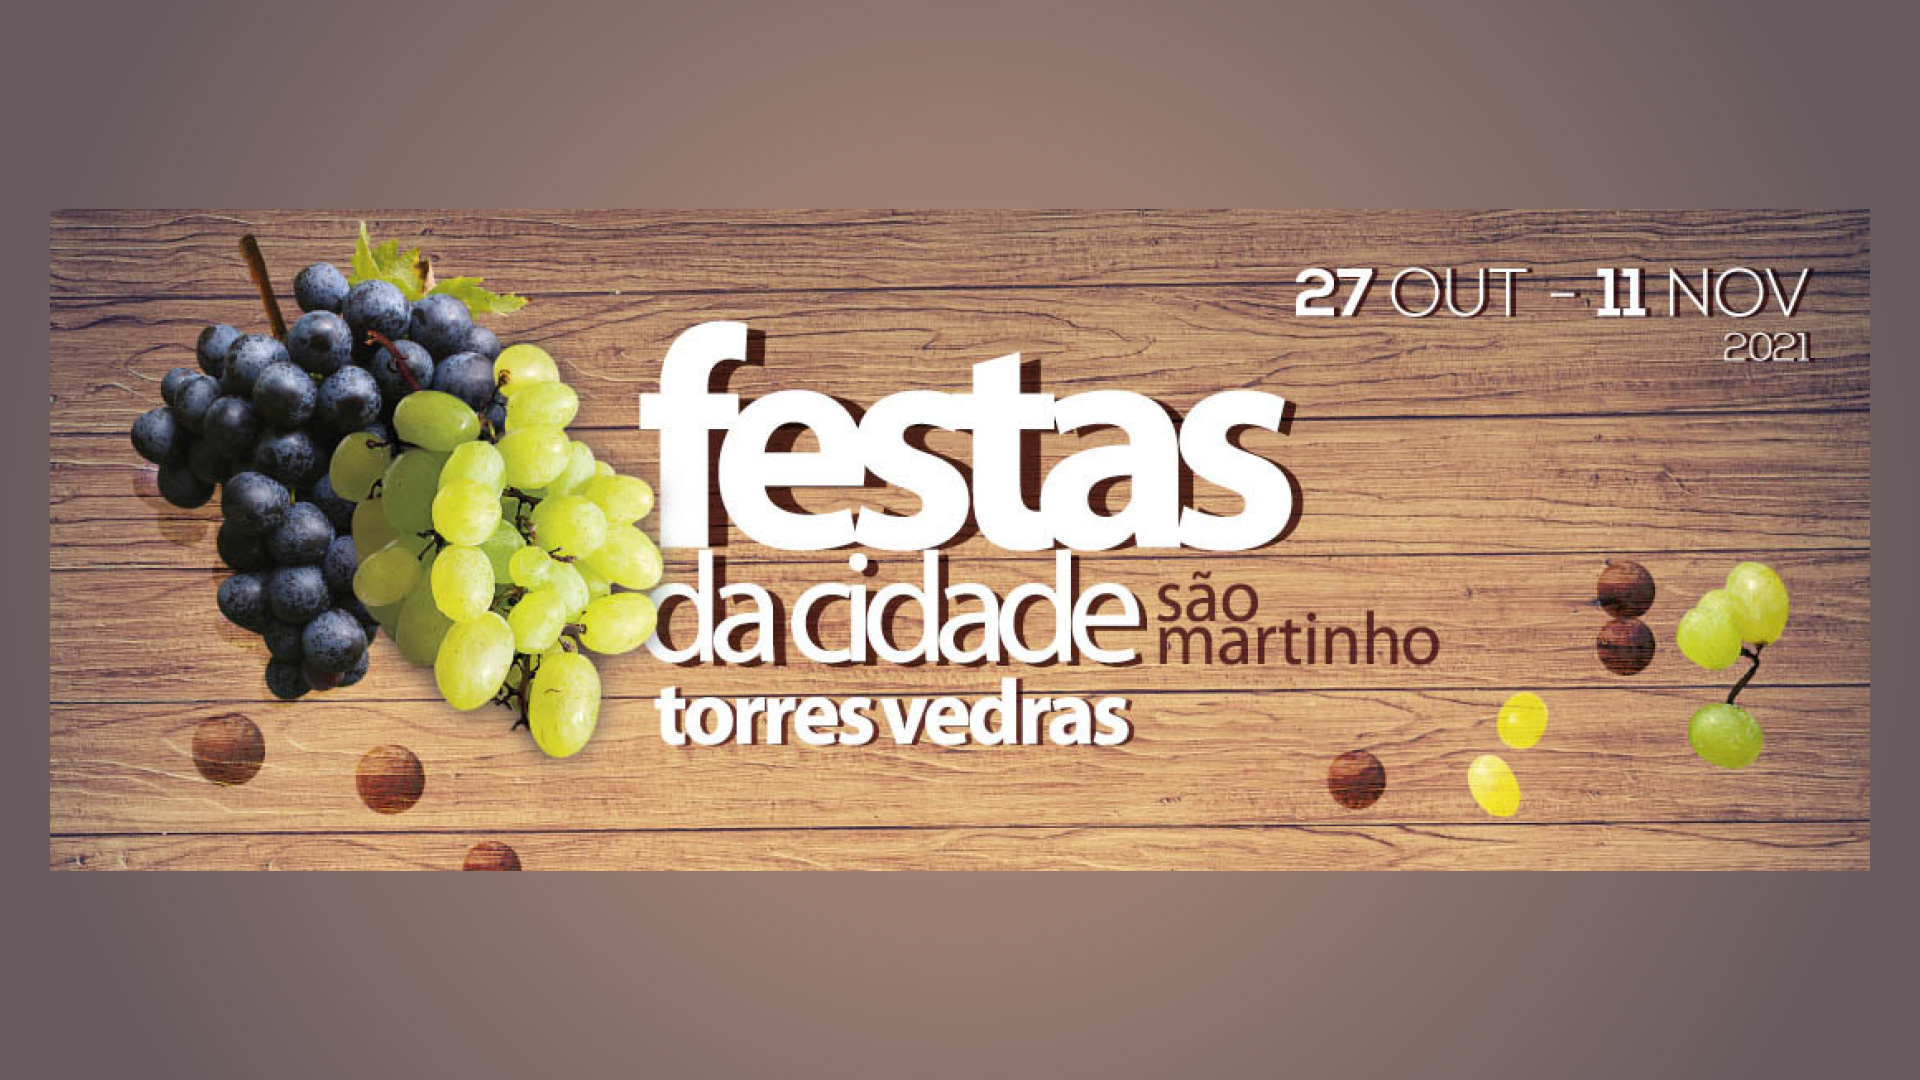 Festas da Cidade de Torres Vedras com música, gastronomia, inovação e atividade física